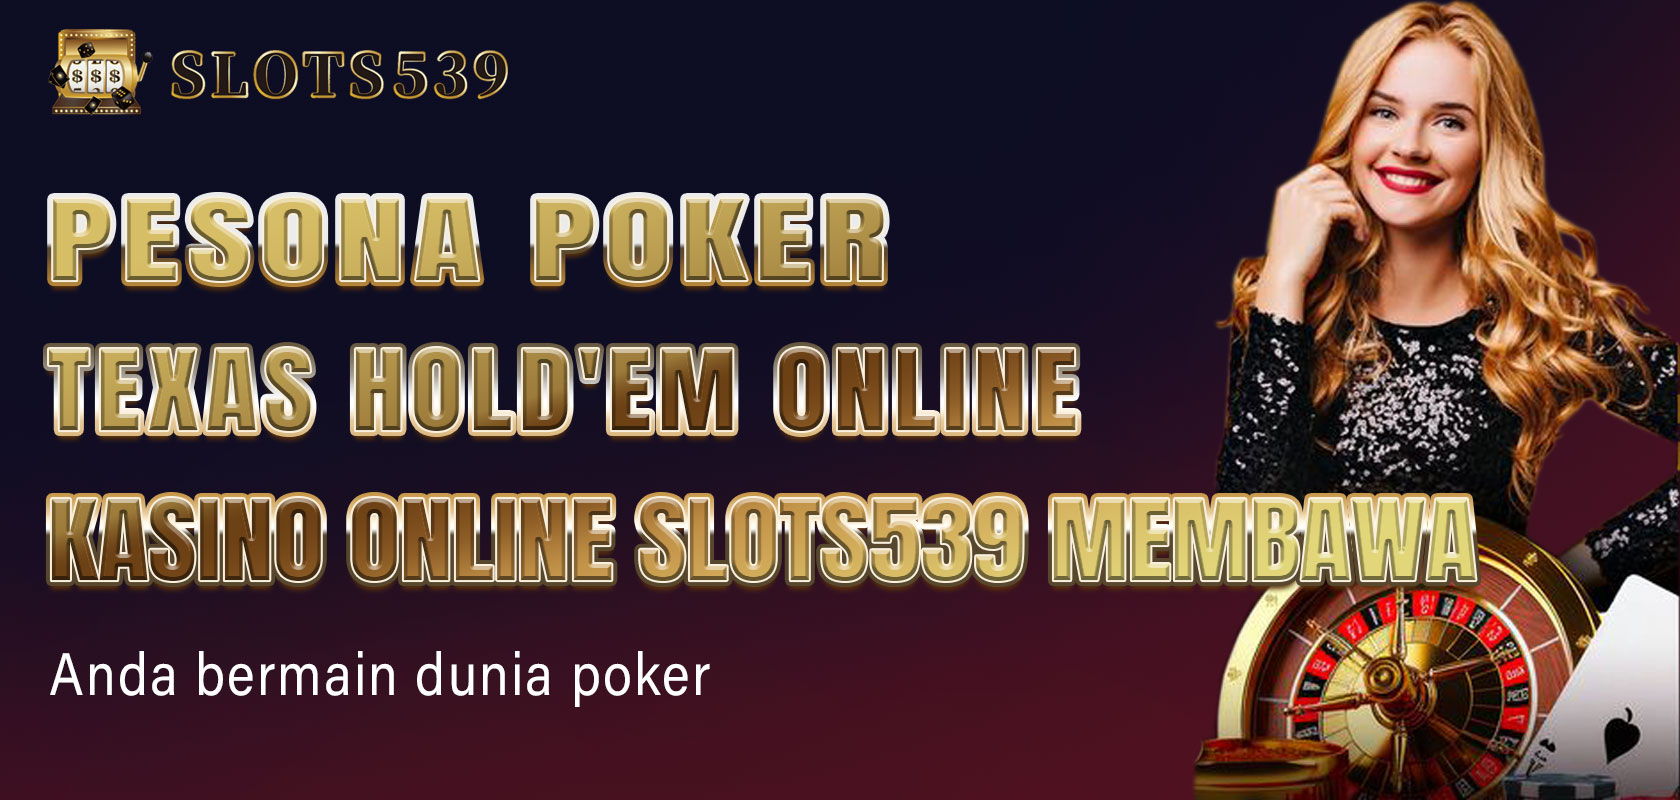 Pesona poker Texas Hold'em online Kasino online Slots539 membawa Anda bermain dunia poker